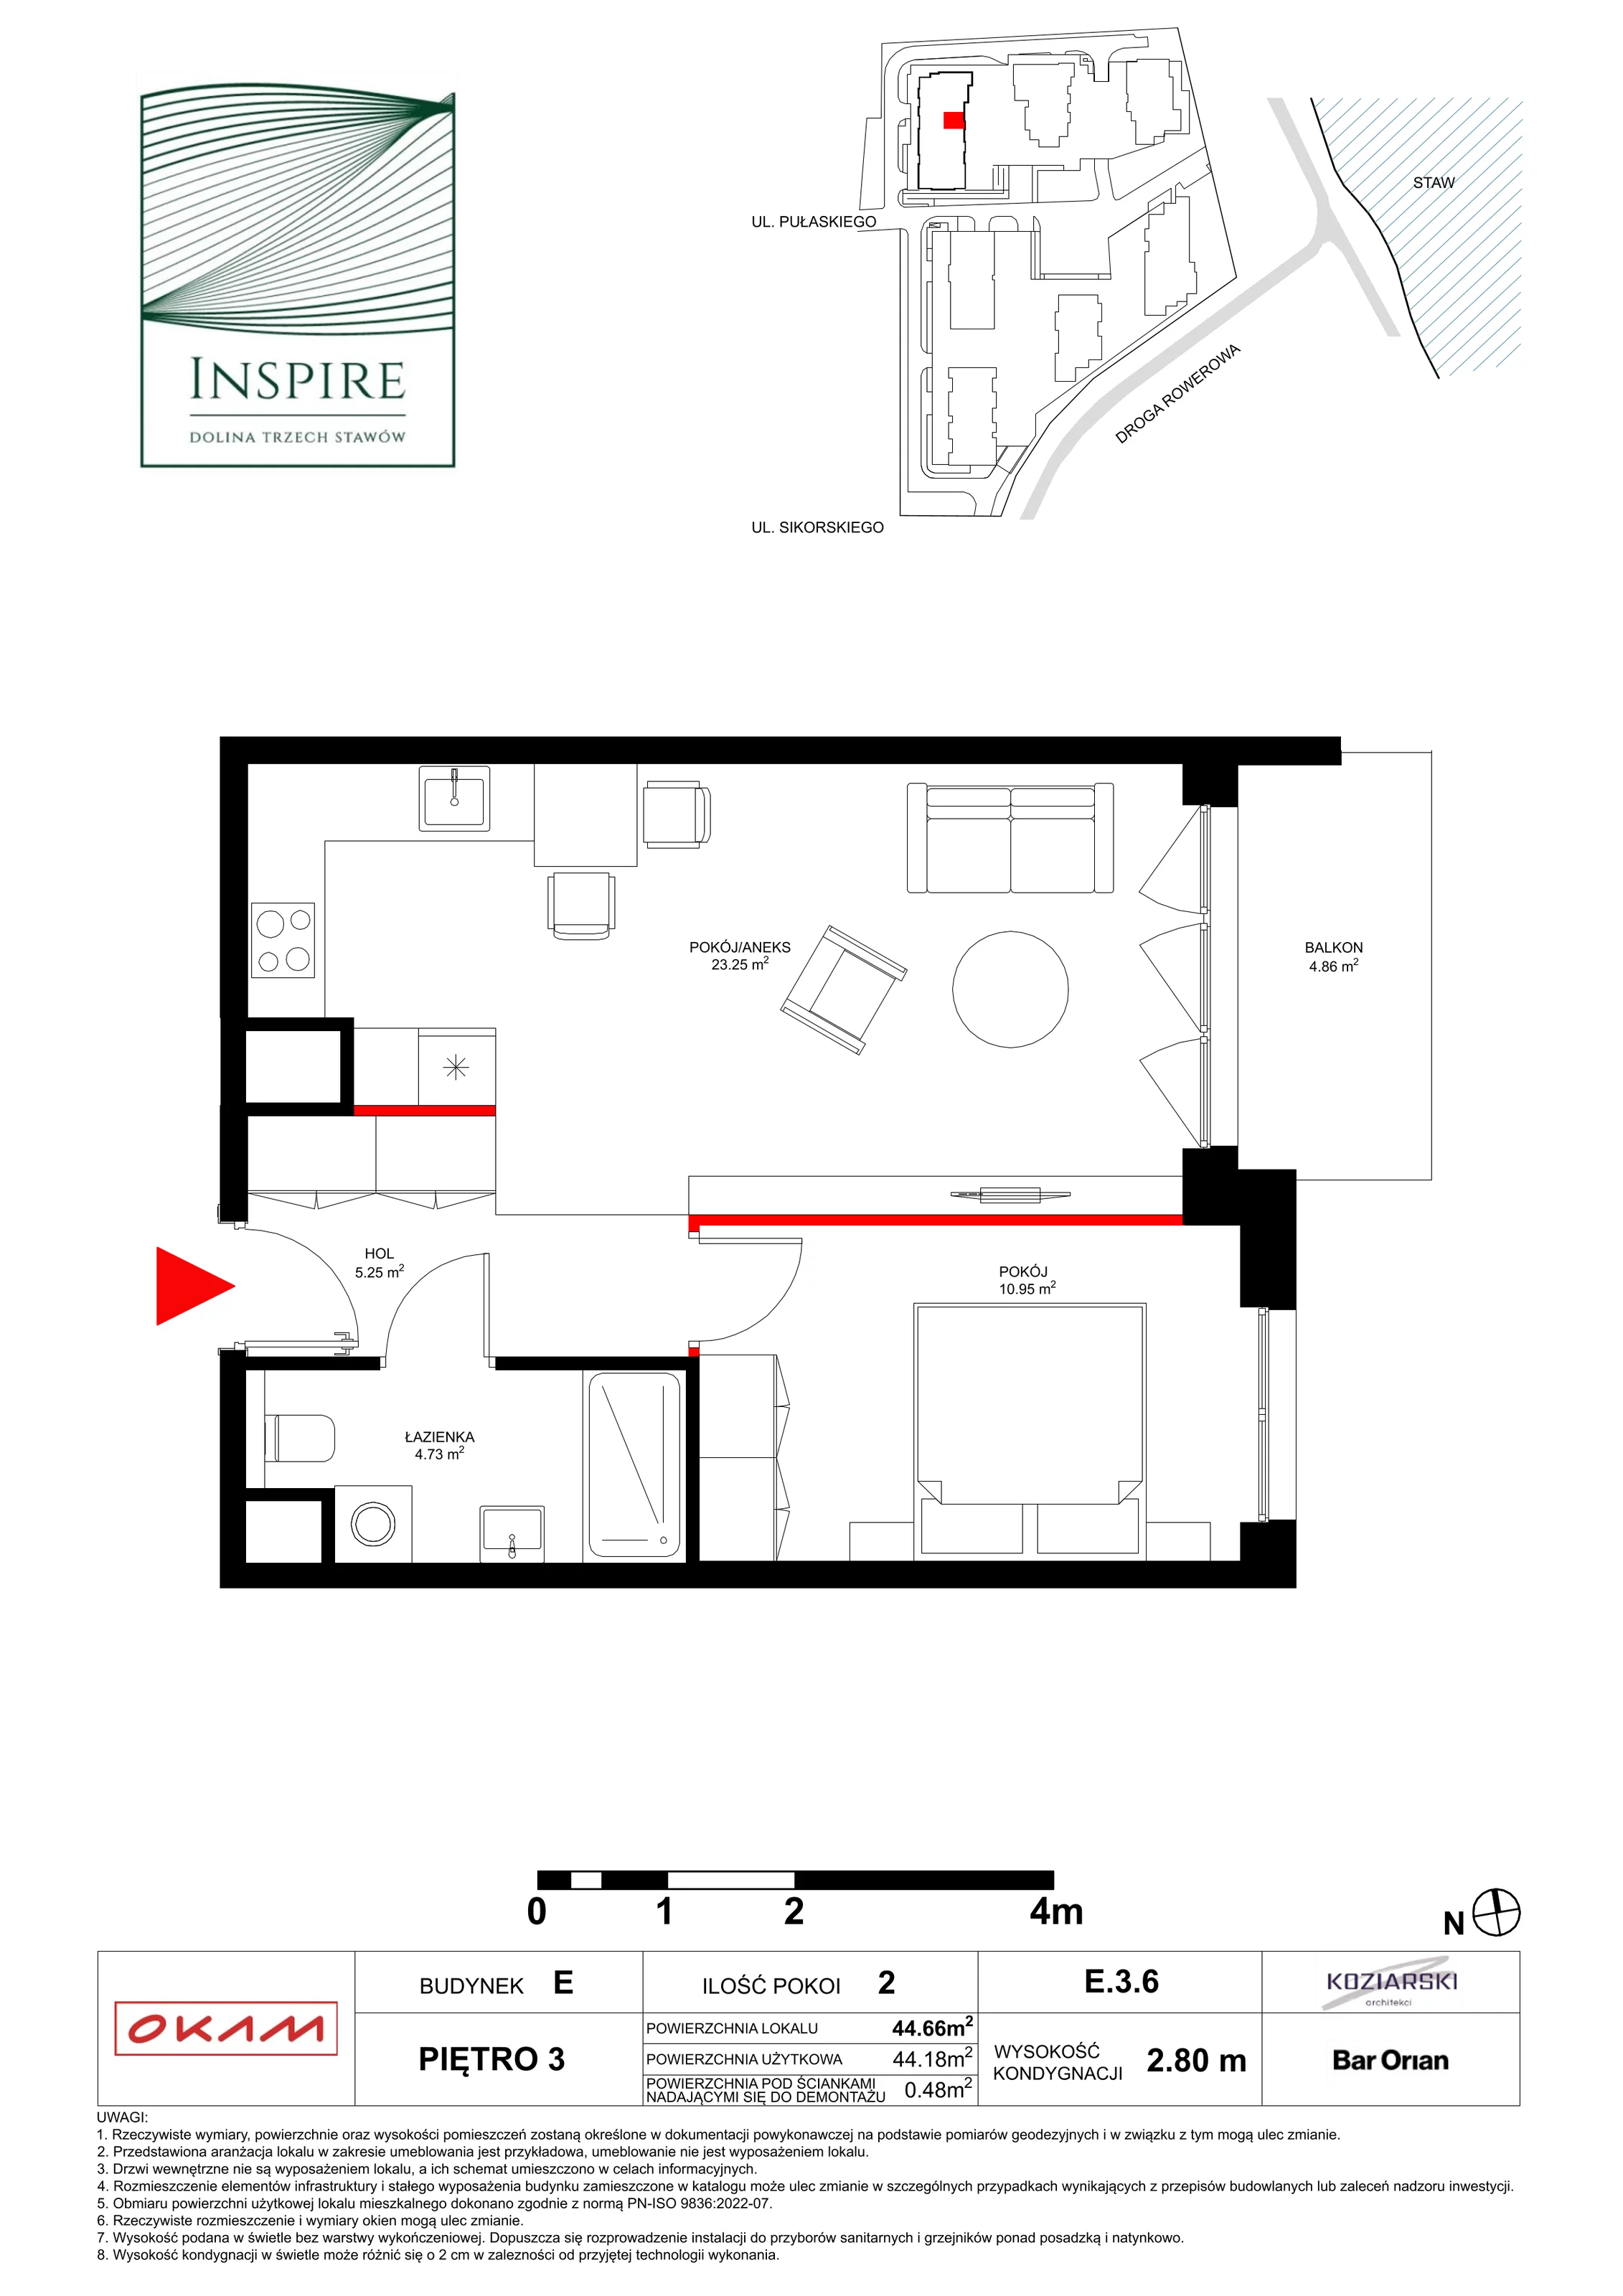 Apartament 44,18 m², piętro 3, oferta nr E.3.6, Inspire, Katowice, Osiedle Paderewskiego-Muchowiec, Dolina Trzech Stawów, ul. gen. Sikorskiego 41